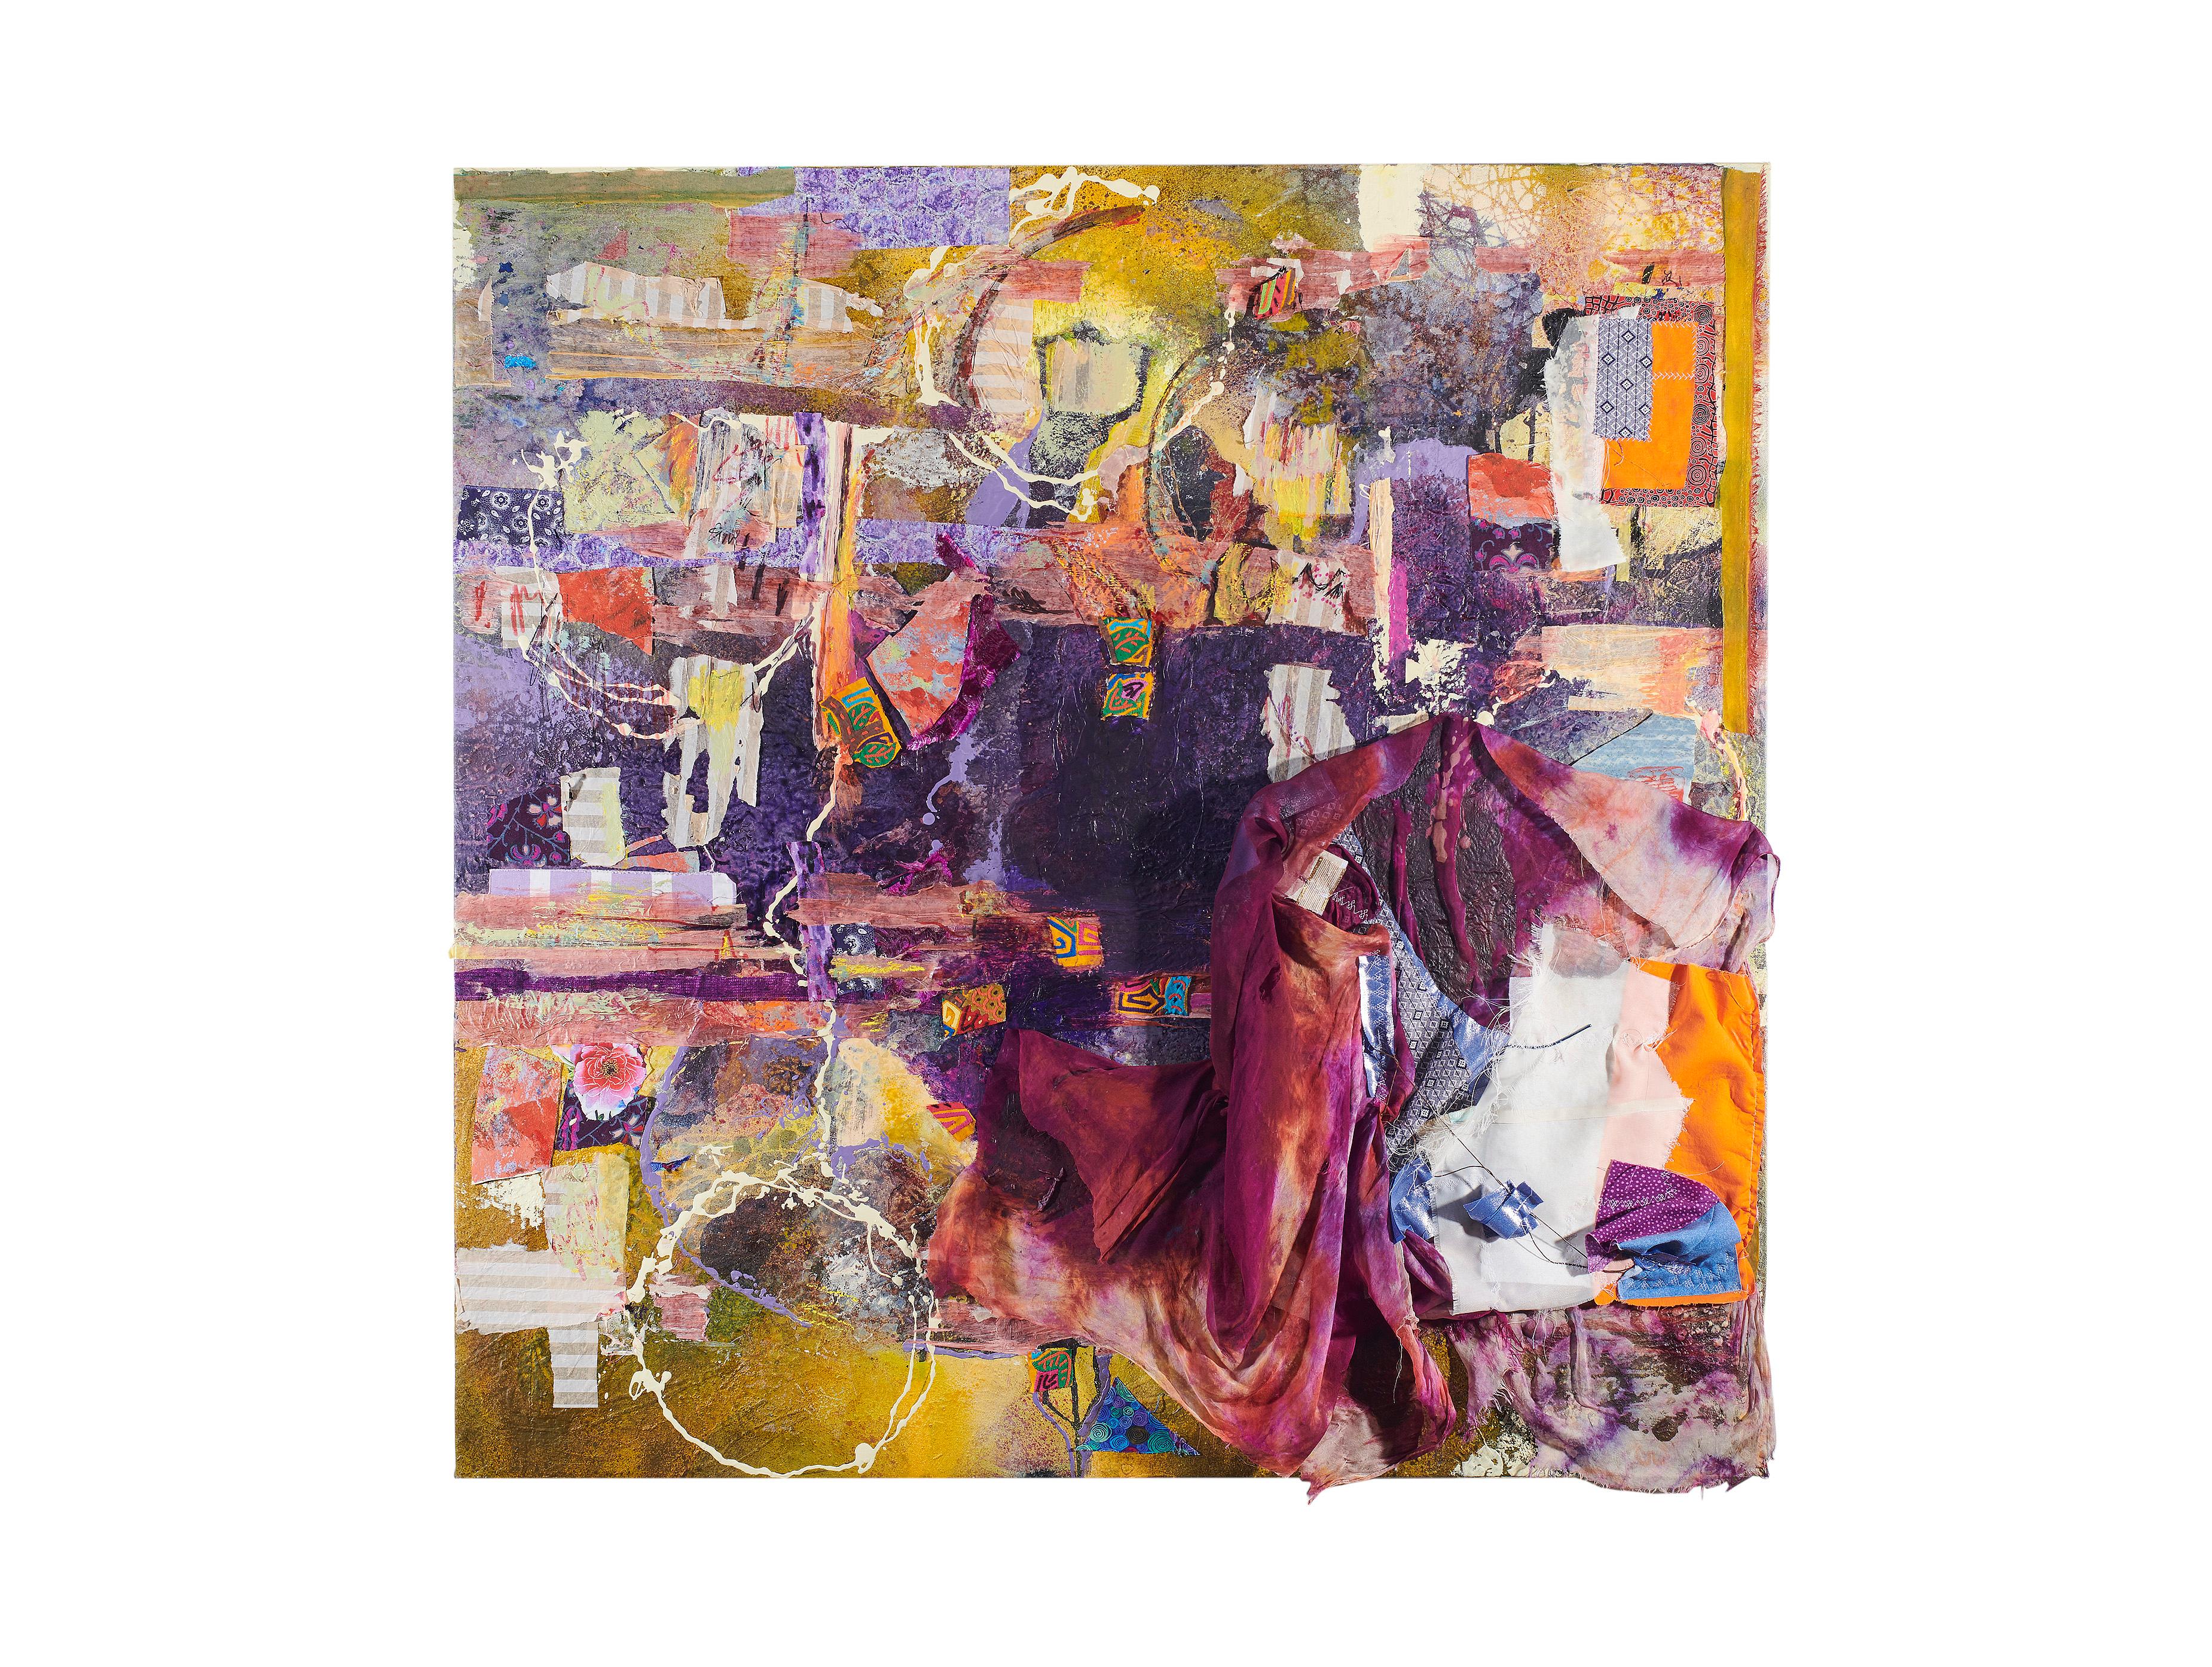 Fenster Einkaufstasche - Robert Rauschenberg Typ Abstrakt in Lila + Gelb  – Painting von Jennifer Blalack